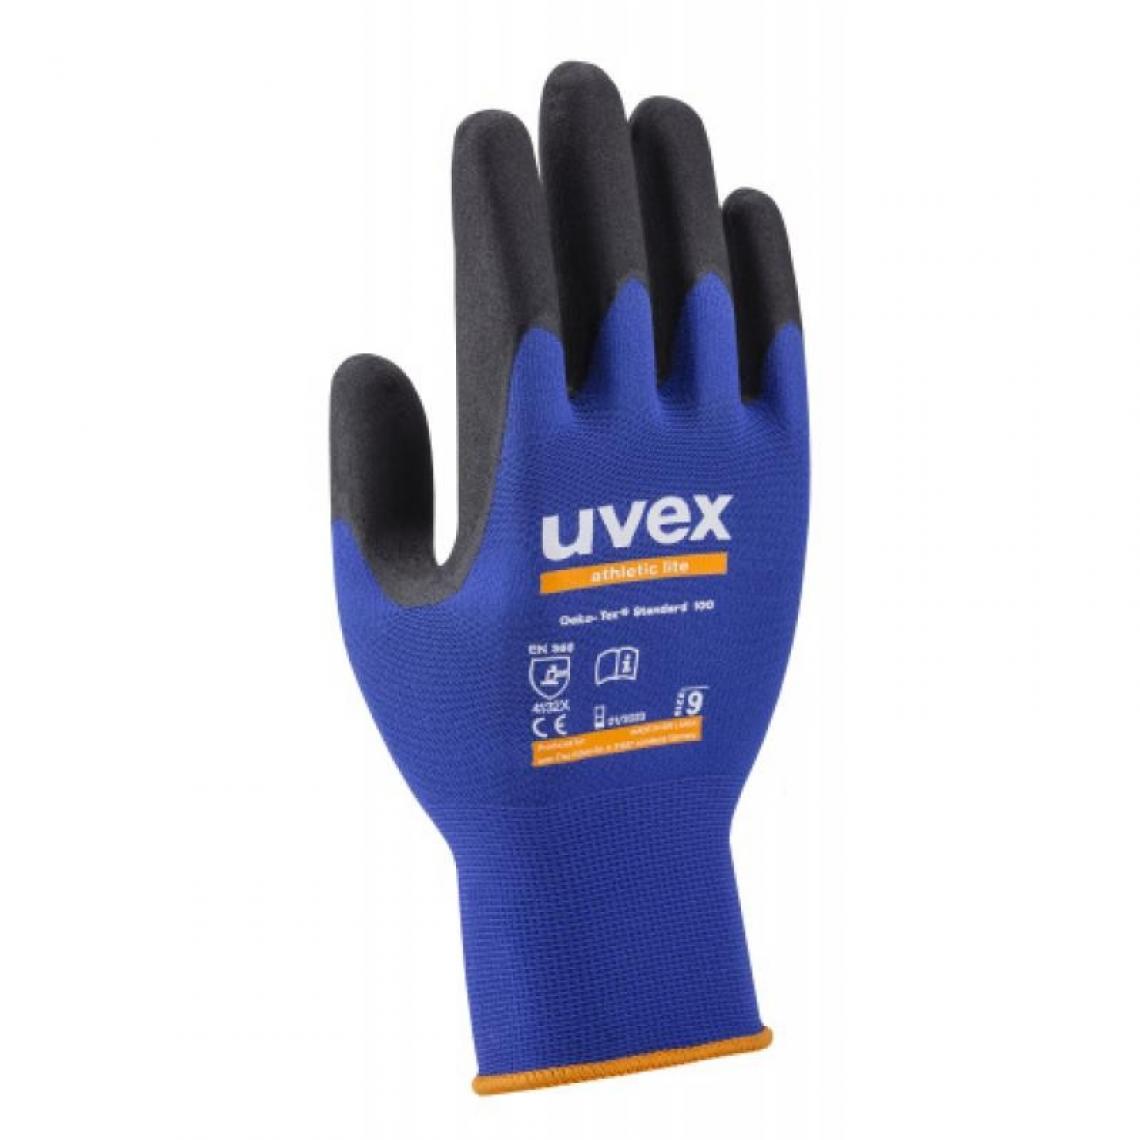 Uvex - Gants athletic lite taille 11 sachet de 10 paires - Protections pieds et mains